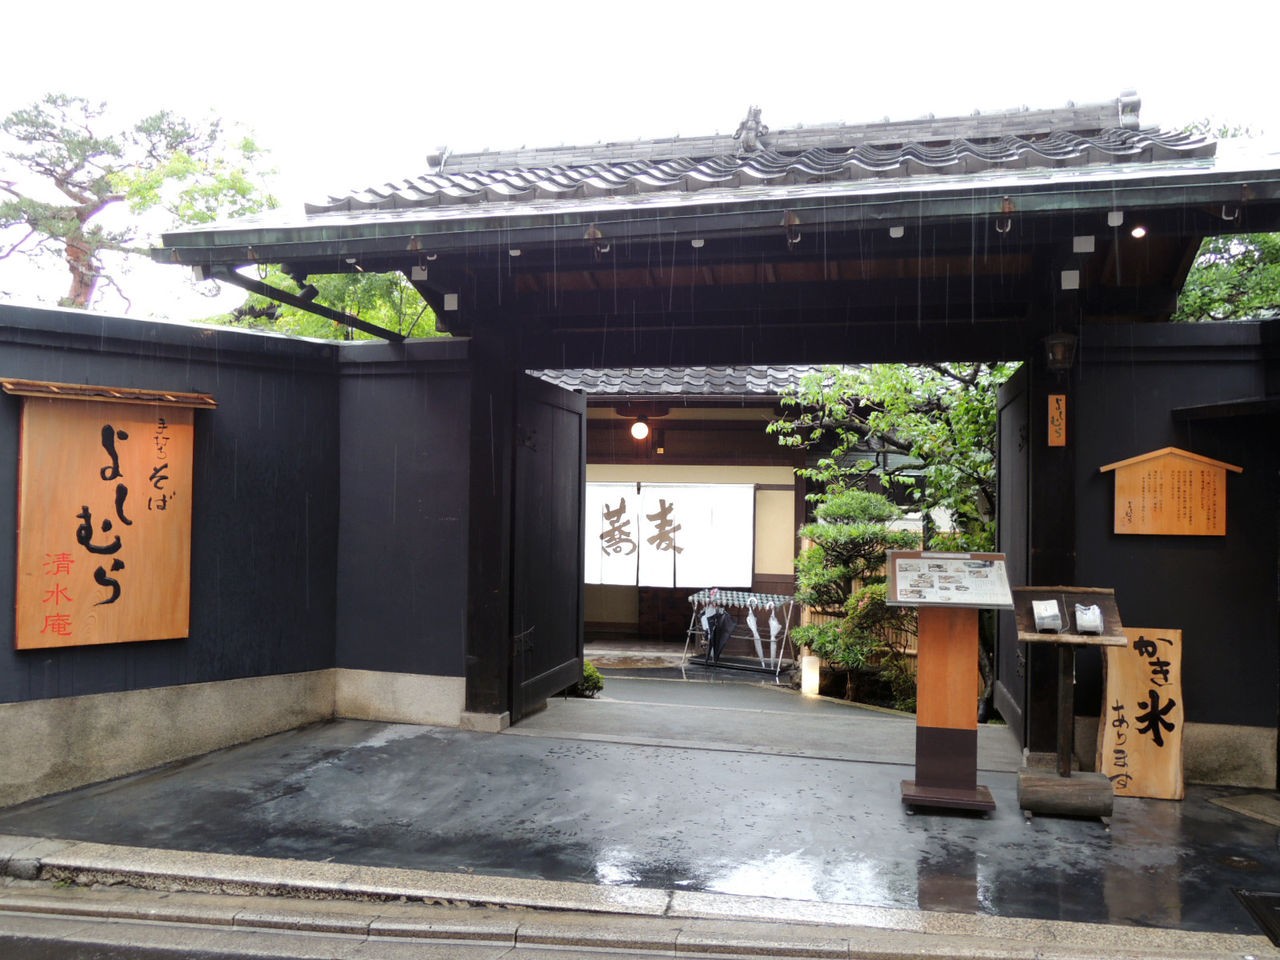 京都・清水寺へ参拝に行ったら立ち寄りたいランチが美味しいおすすめのお店